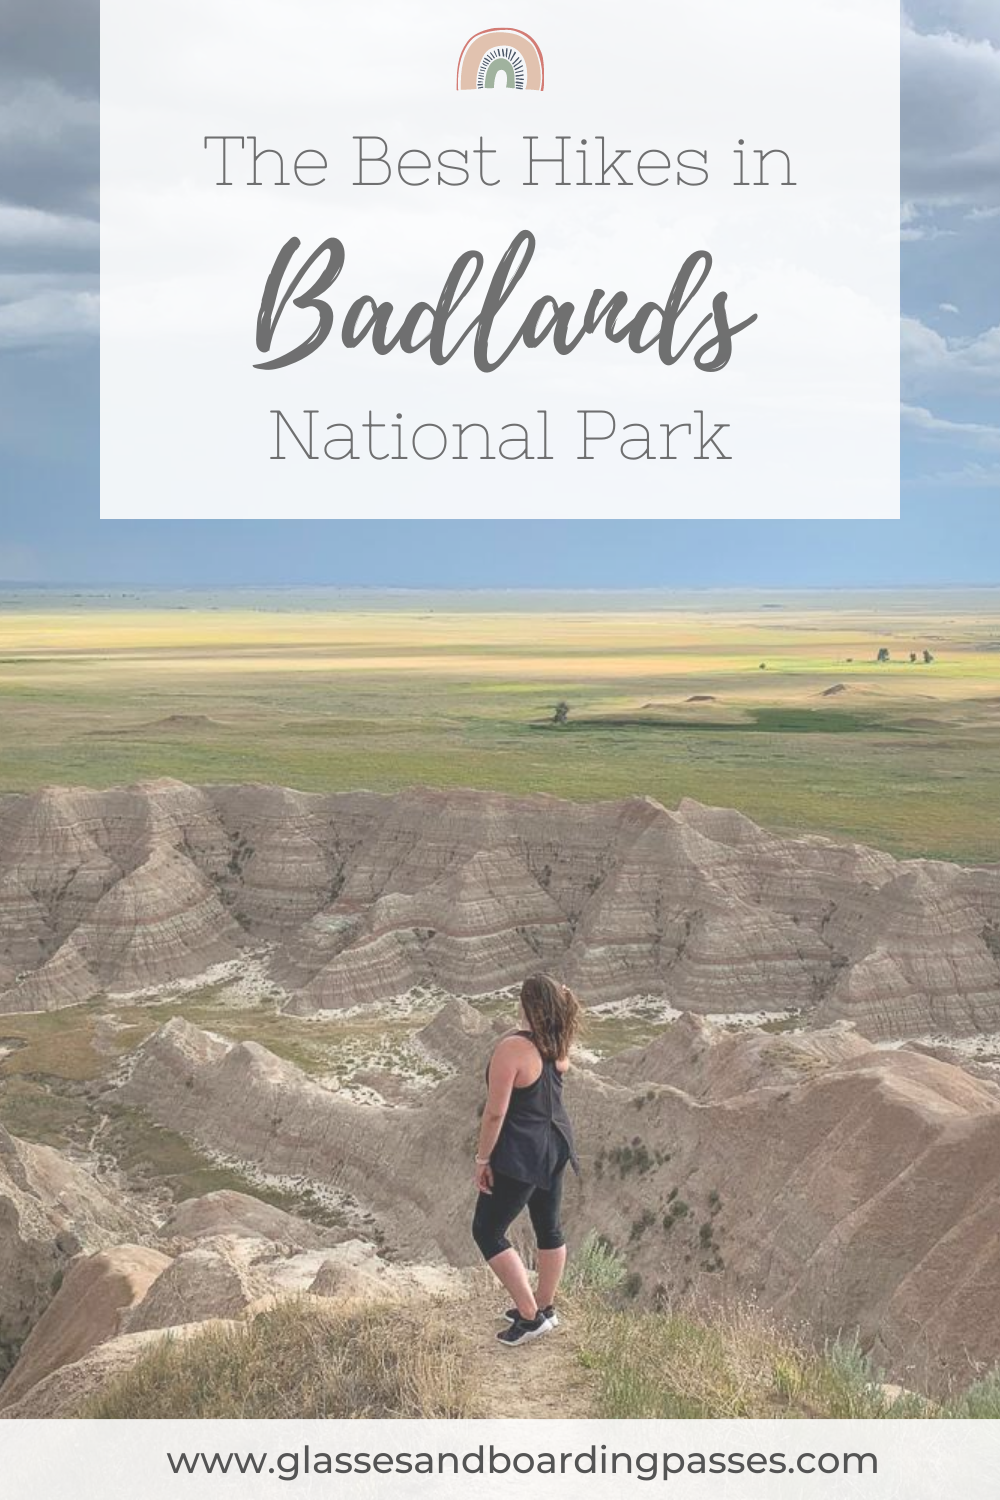 Best Hikes in Badlands National Park